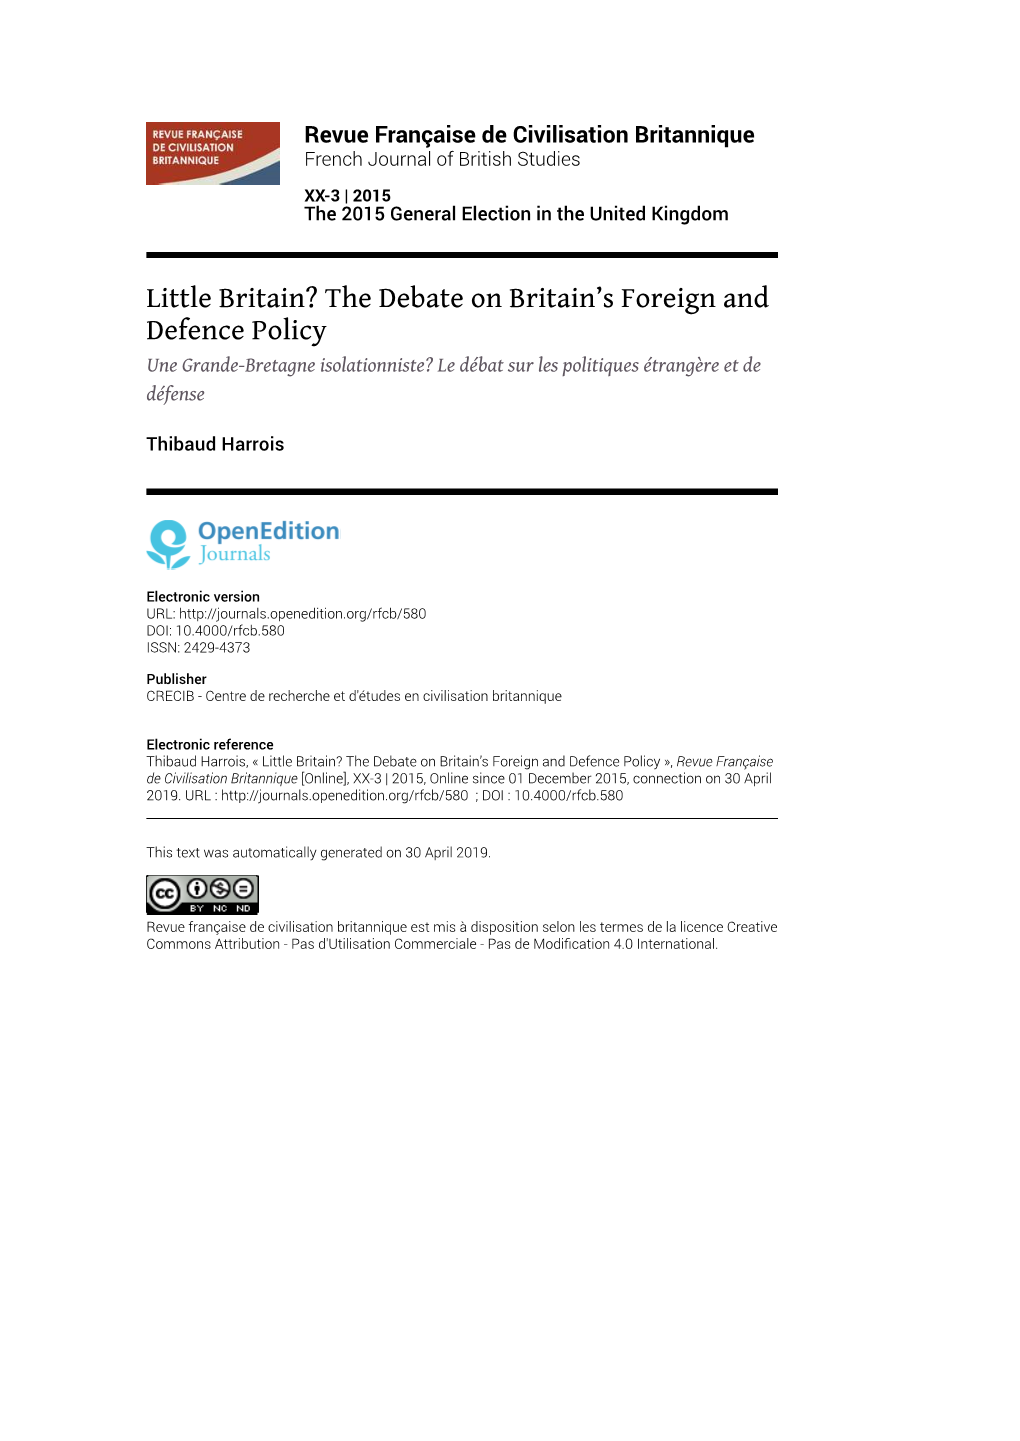 Revue Française De Civilisation Britannique, XX-3 | 2015 Little Britain? the Debate on Britain’S Foreign and Defence Policy 2